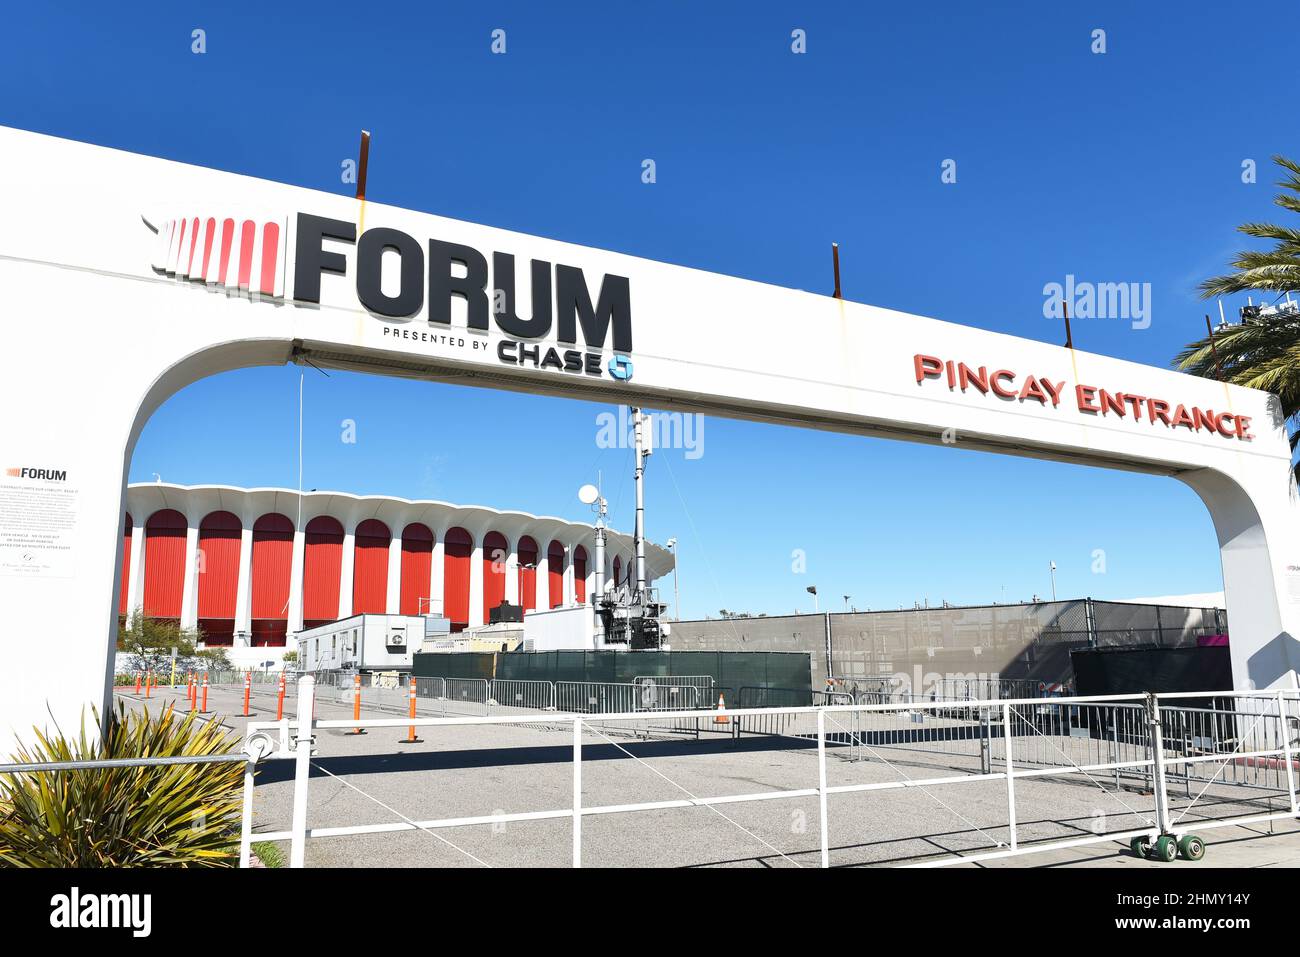 INGLEWOOD, CALIFORNIE - 12 FÉVRIER 2022 : l'entrée de Pincay à l'arène Forum Banque D'Images